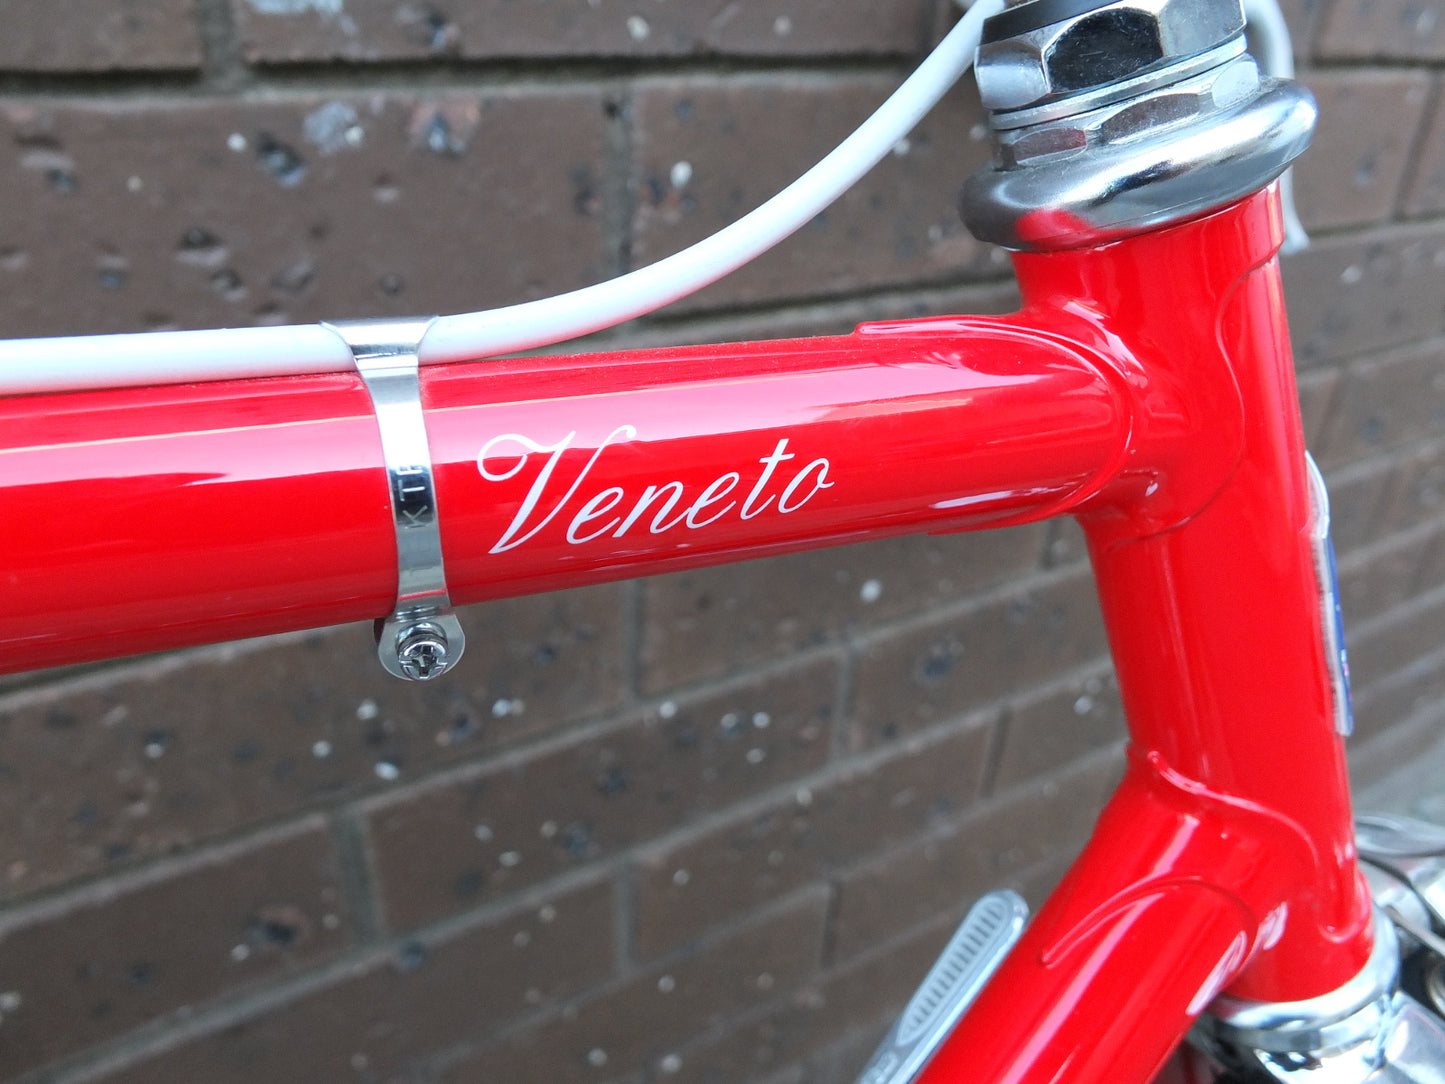 Pinarello Veneto Retro Steel Road Bike - Gloss Red